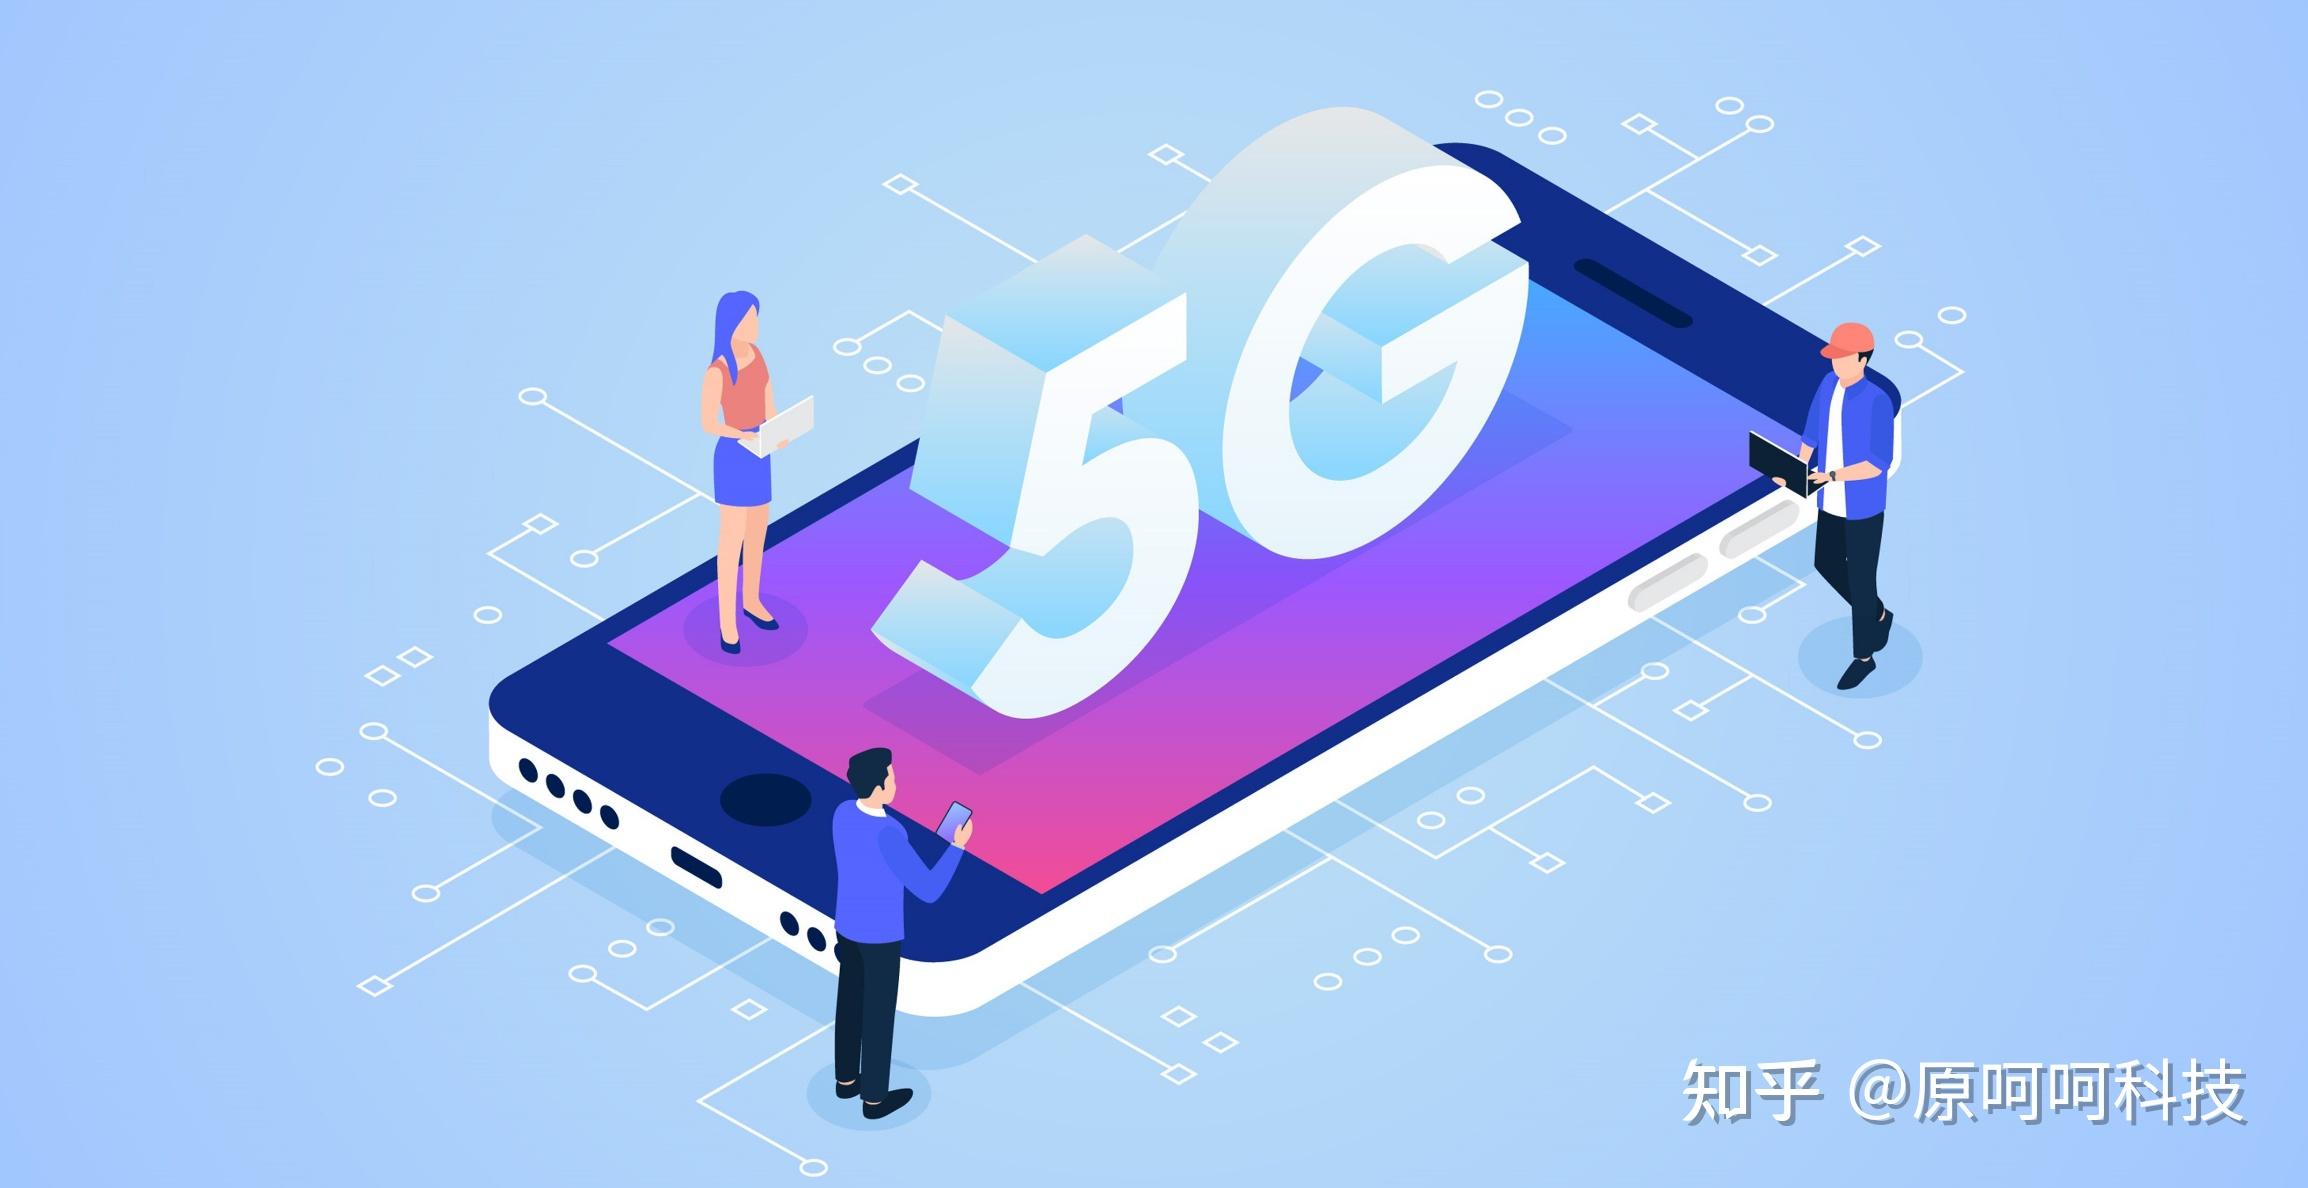 5G 技术：网速快如闪电且稳定，连接万物让智能家居成为现实  第3张